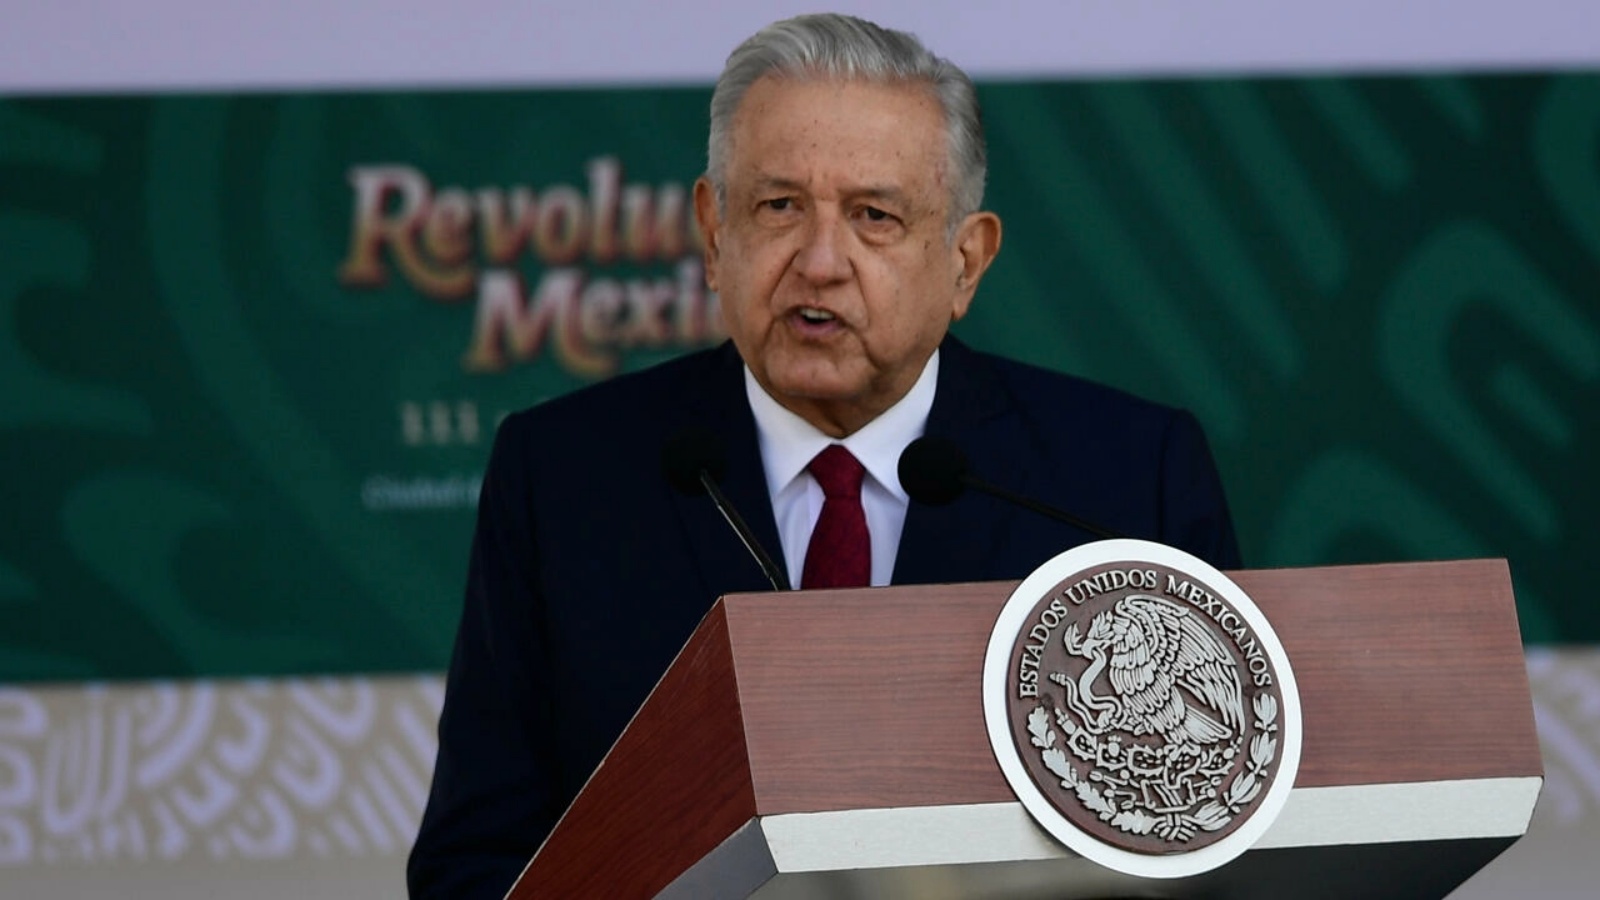 الرئيس المكسيكي أندريس مانويل لوبيز أوبرادور (أرشيفية)